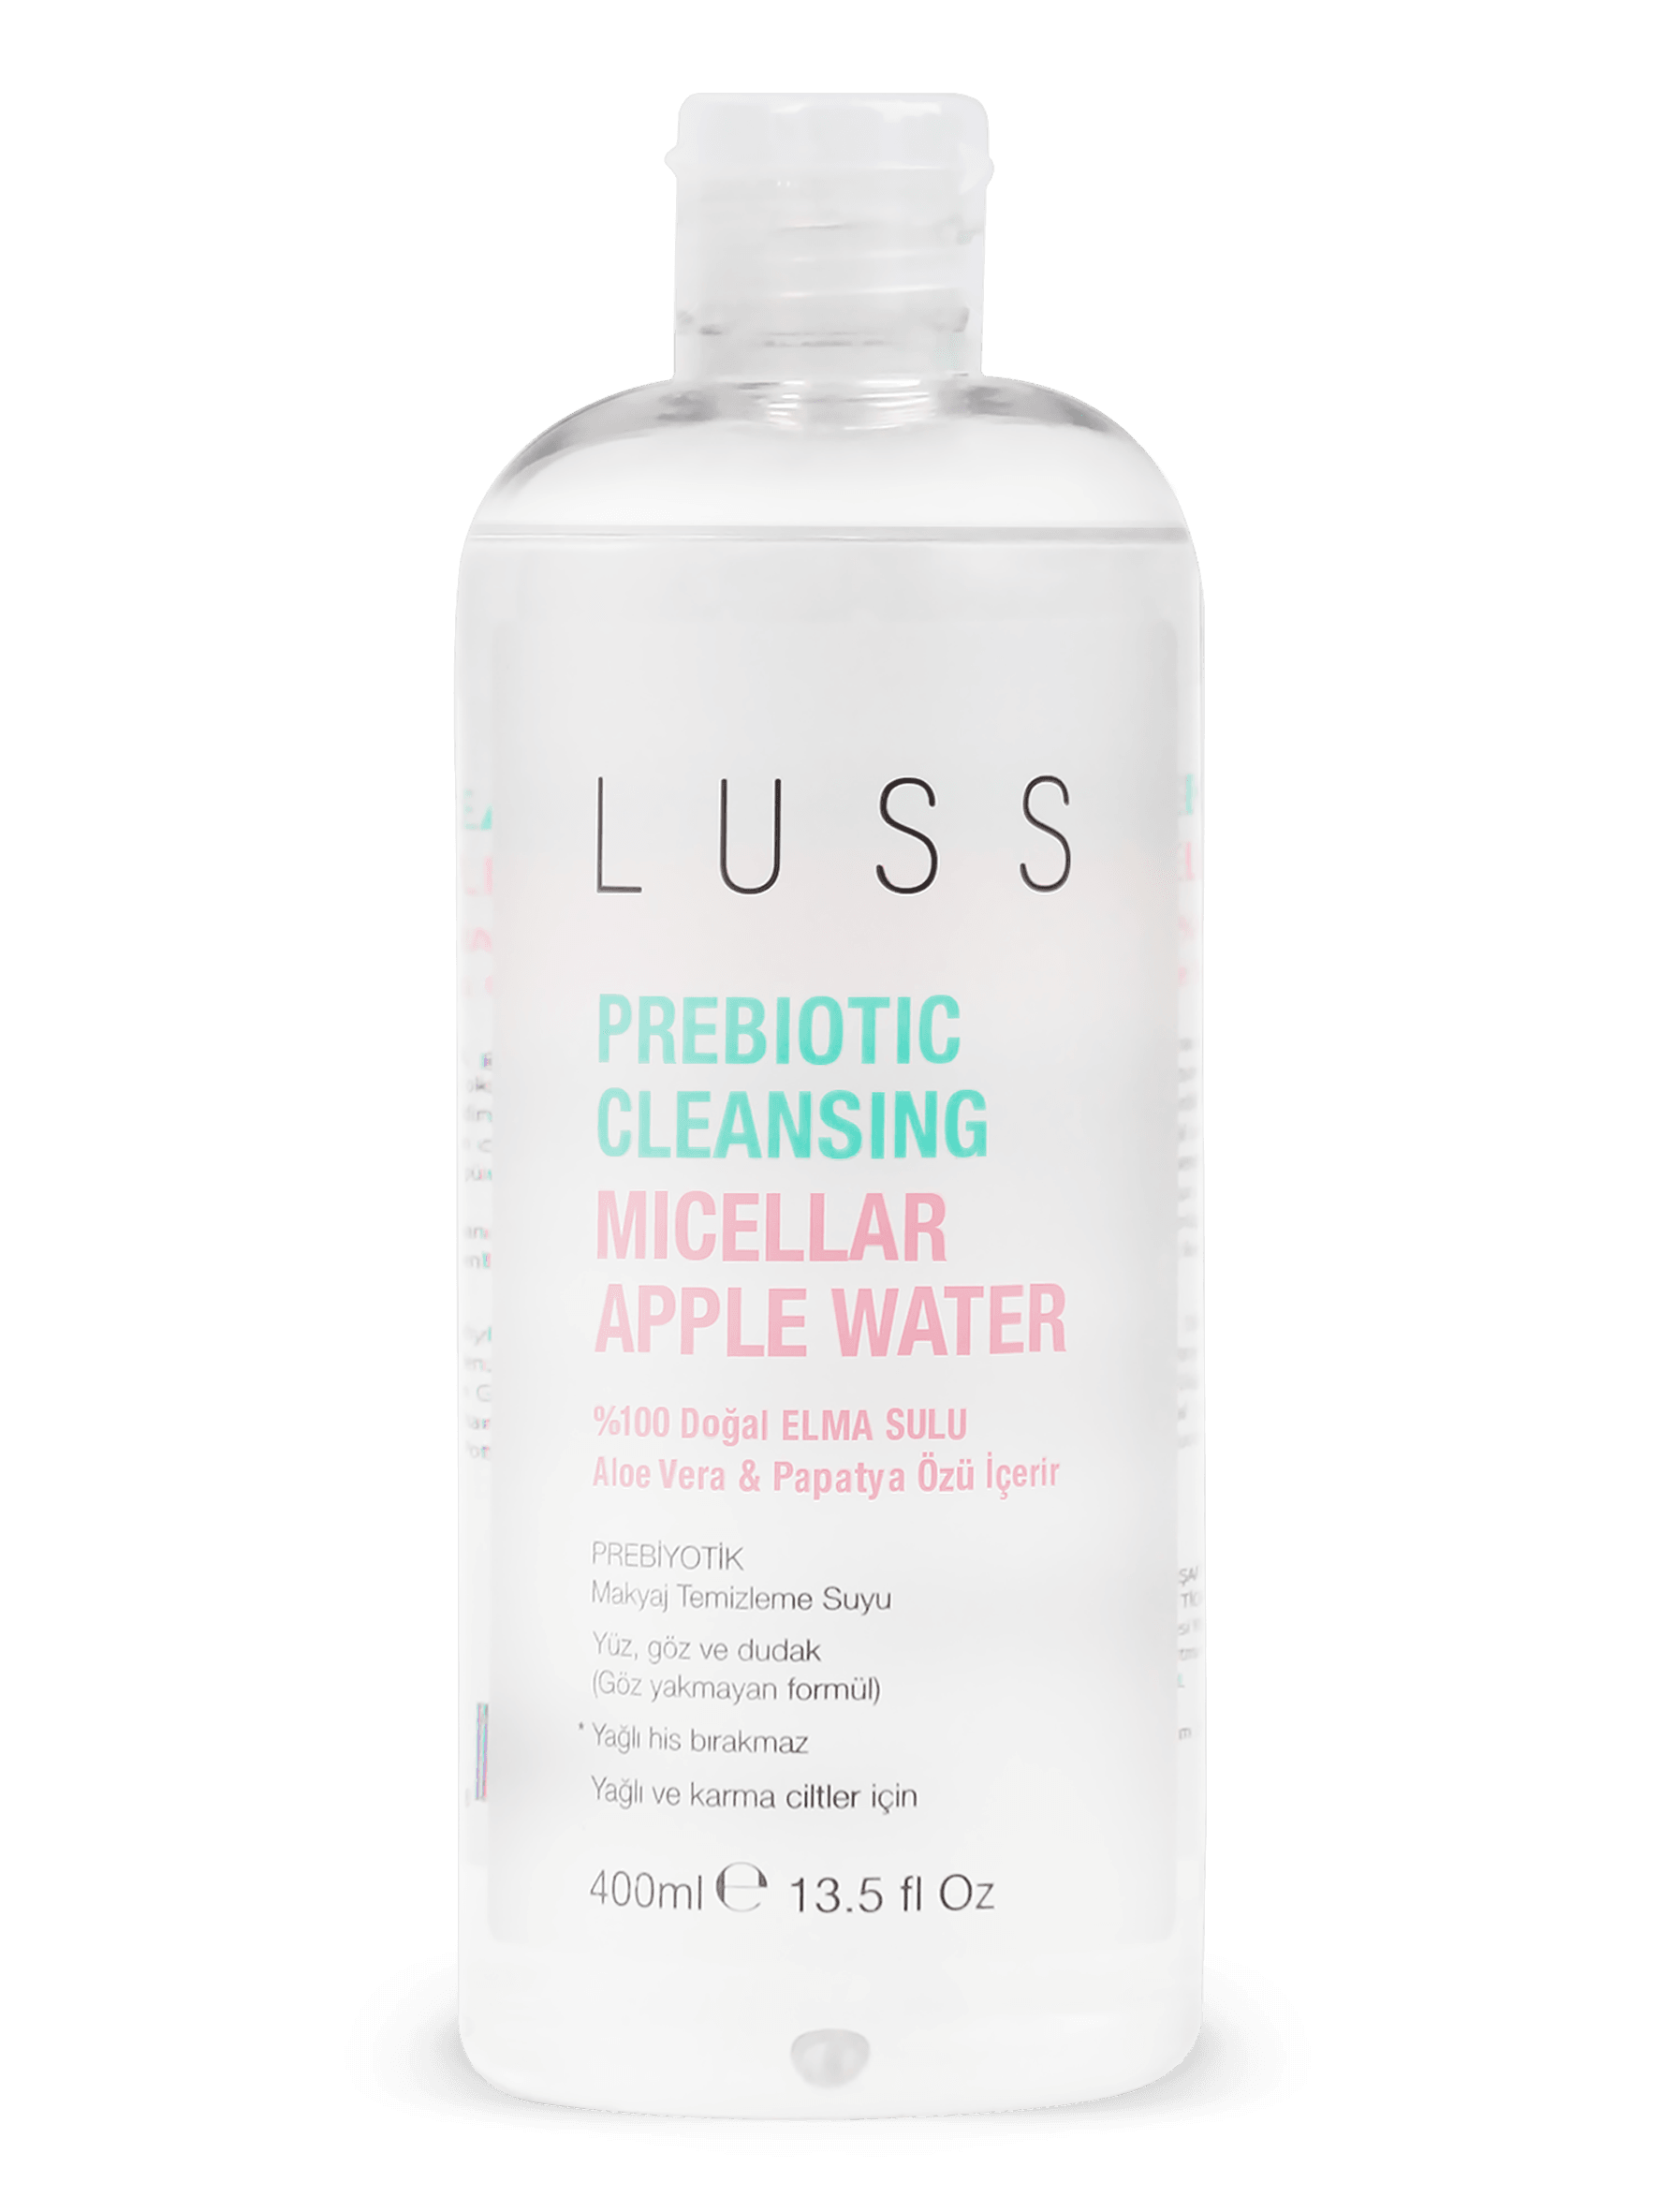 LUSS Prebiotic Cleansing Micellar Apple Water